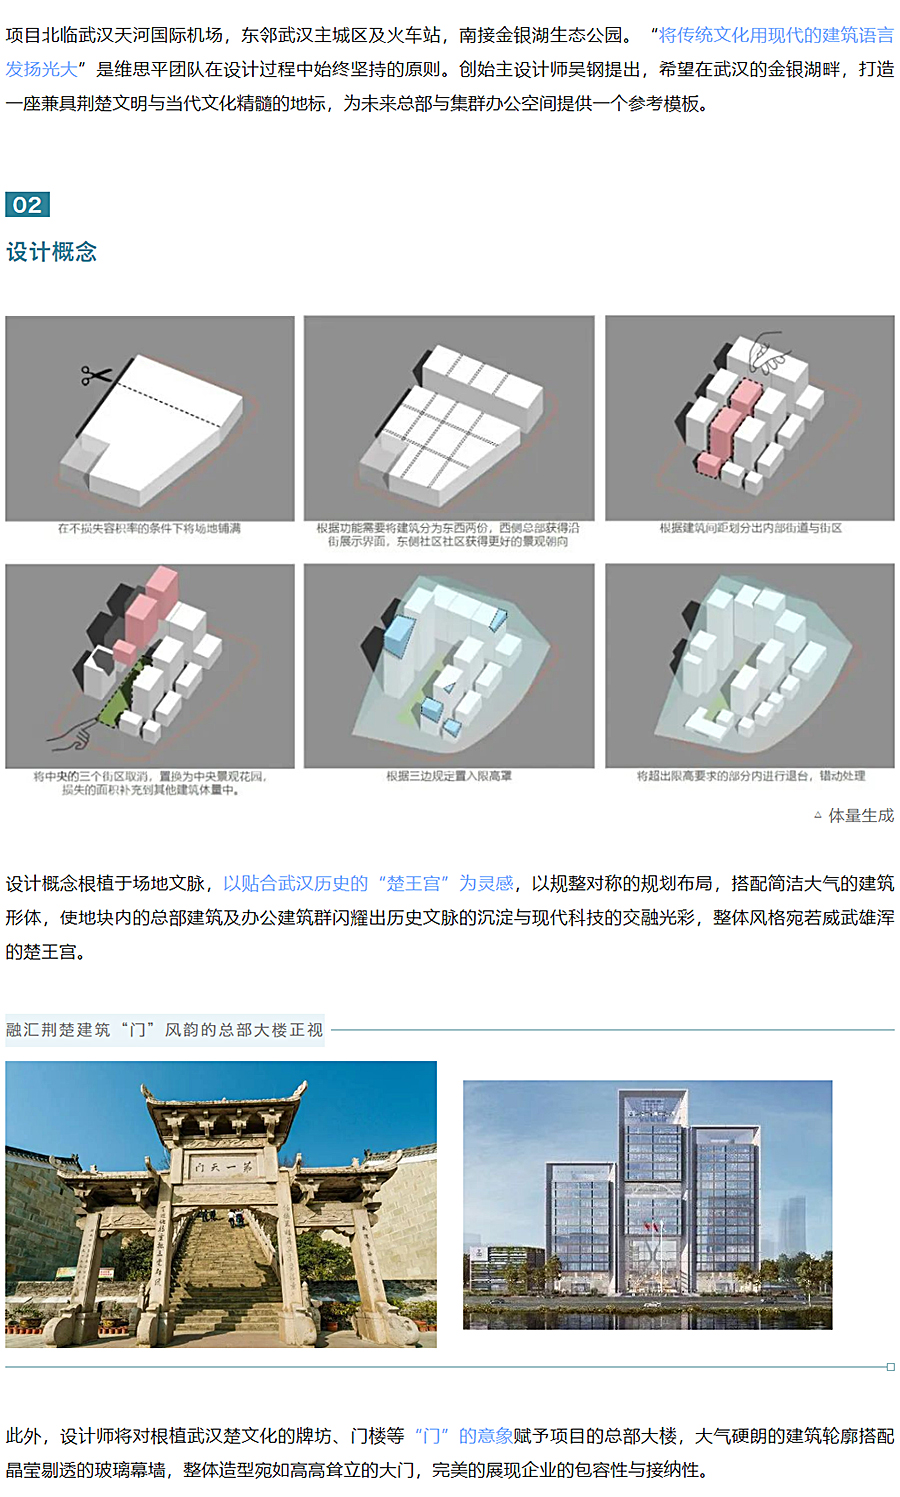 中建壹品澜荟-_-与环境共生的新型总部办公综合体_0002_图层-3.jpg